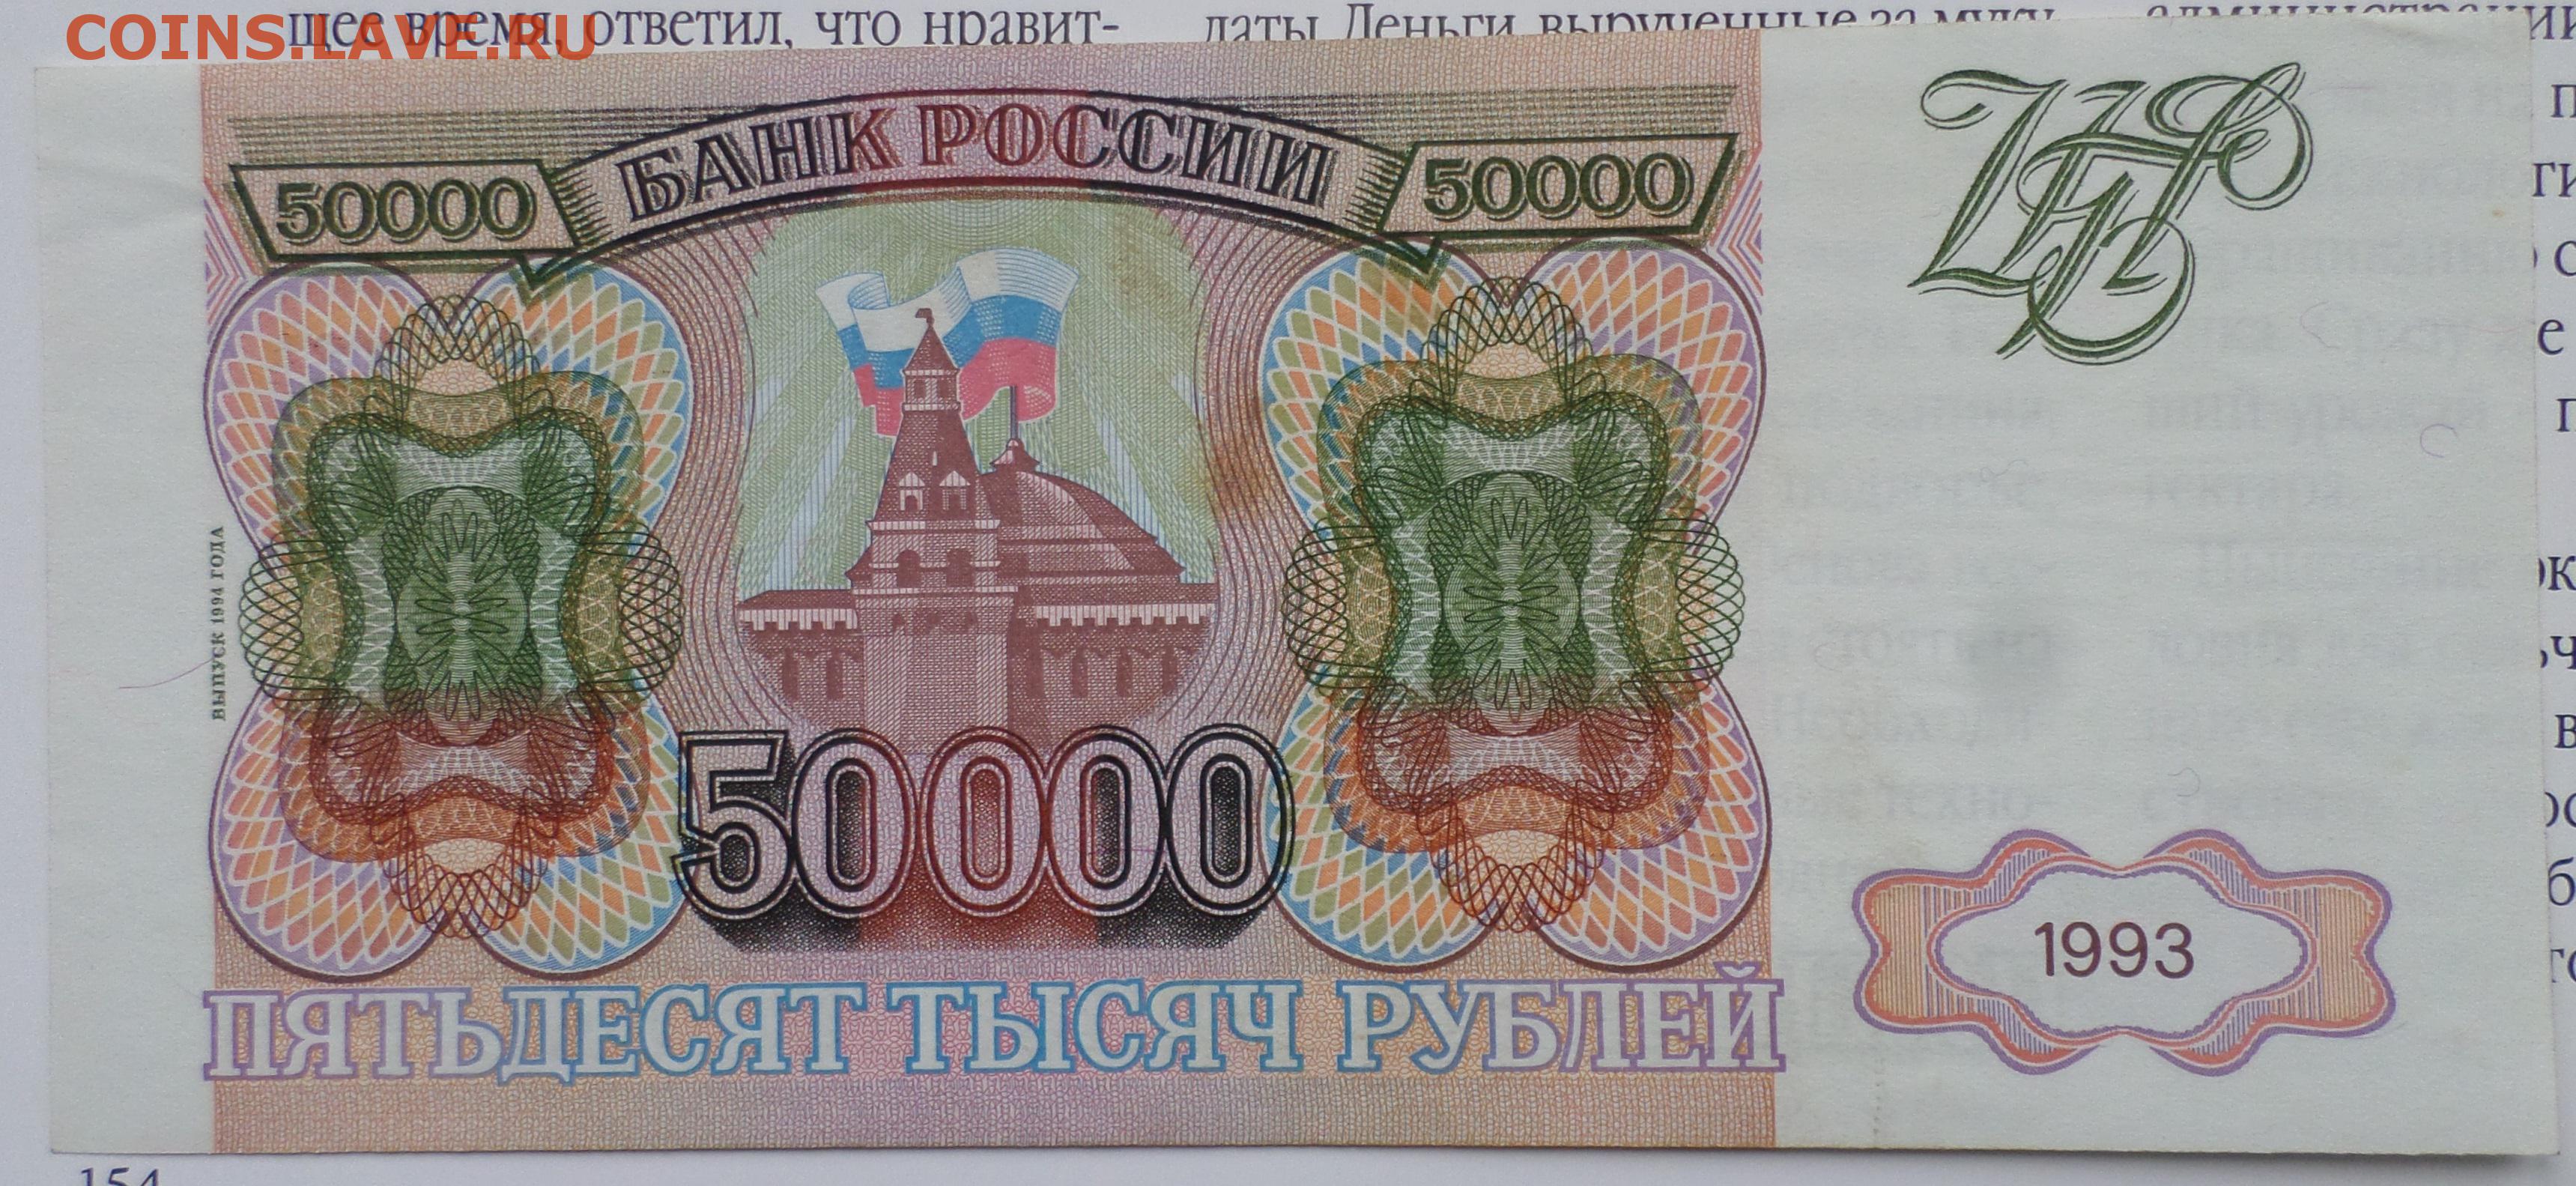 Сто пятьдесят шесть тысяч. Купюра 50000 рублей 1993 года. Банкнота 50000 рублей 1993. 50 000 Рублей купюра 1993 года. Купюра 50000 рублей.